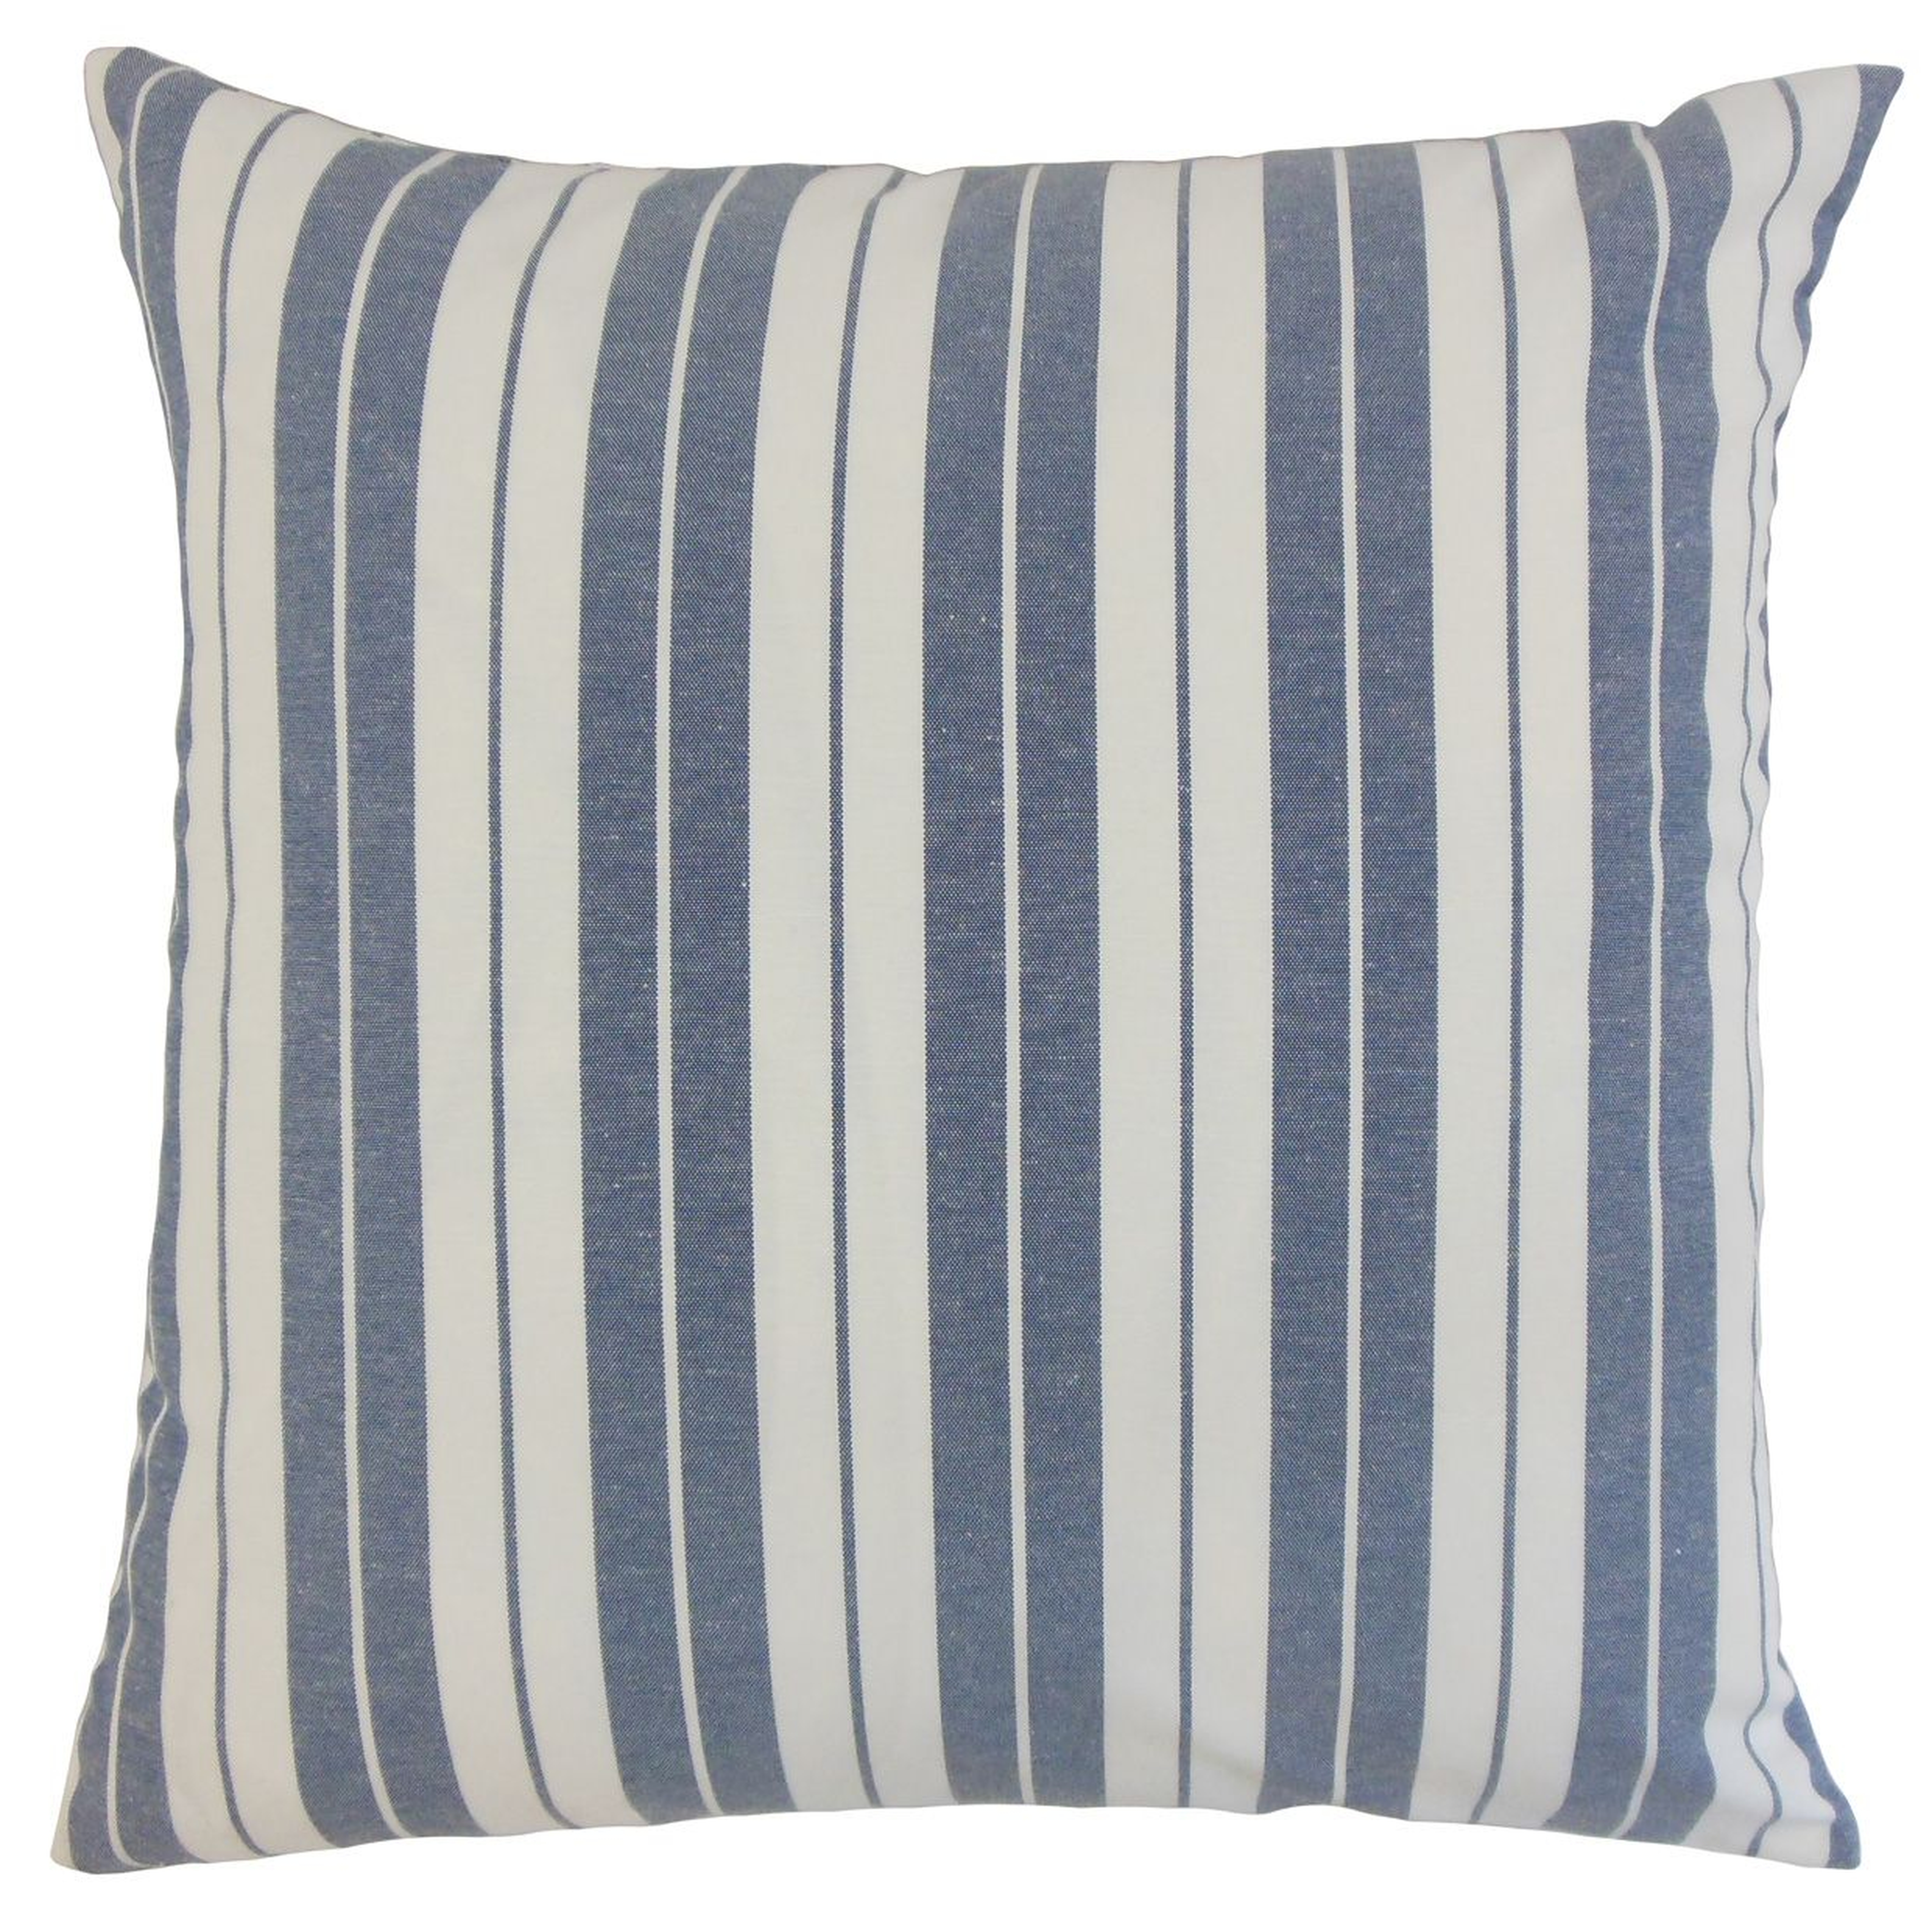 Henley Stripe Pillow, Navy, 22" x 22" - Havenly Essentials